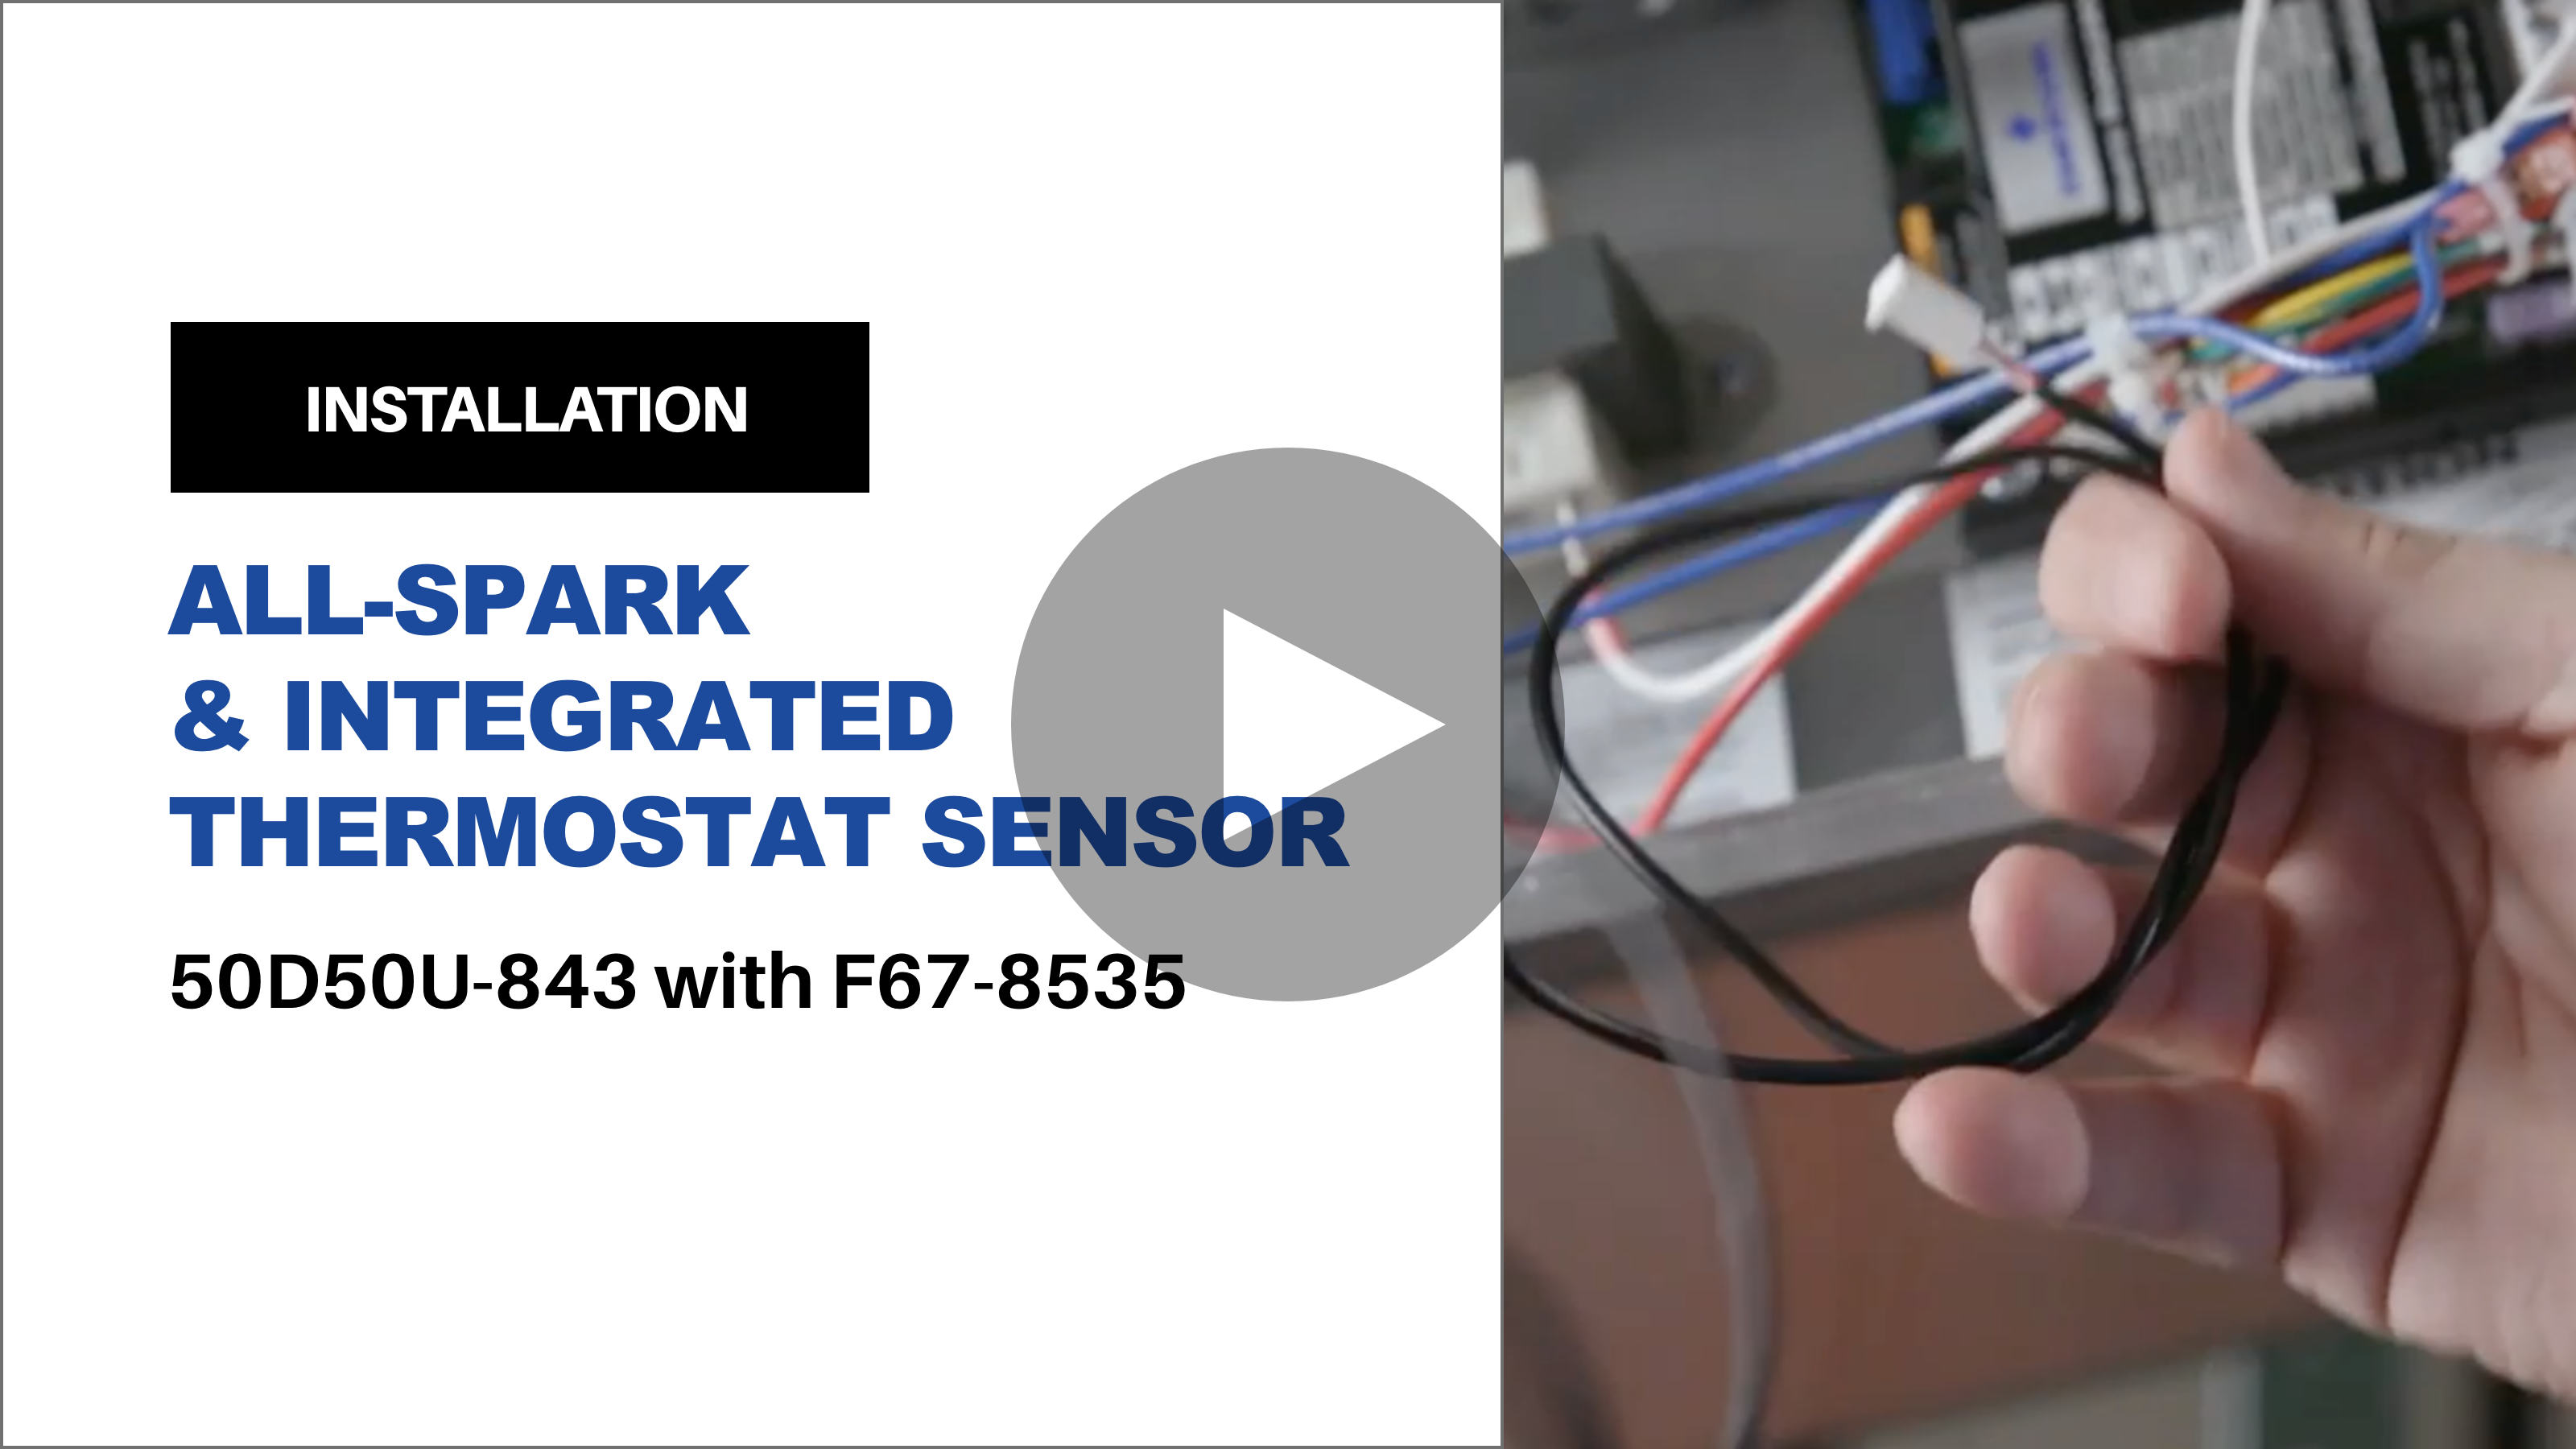 All-Spark & Thermostat Sensor Install